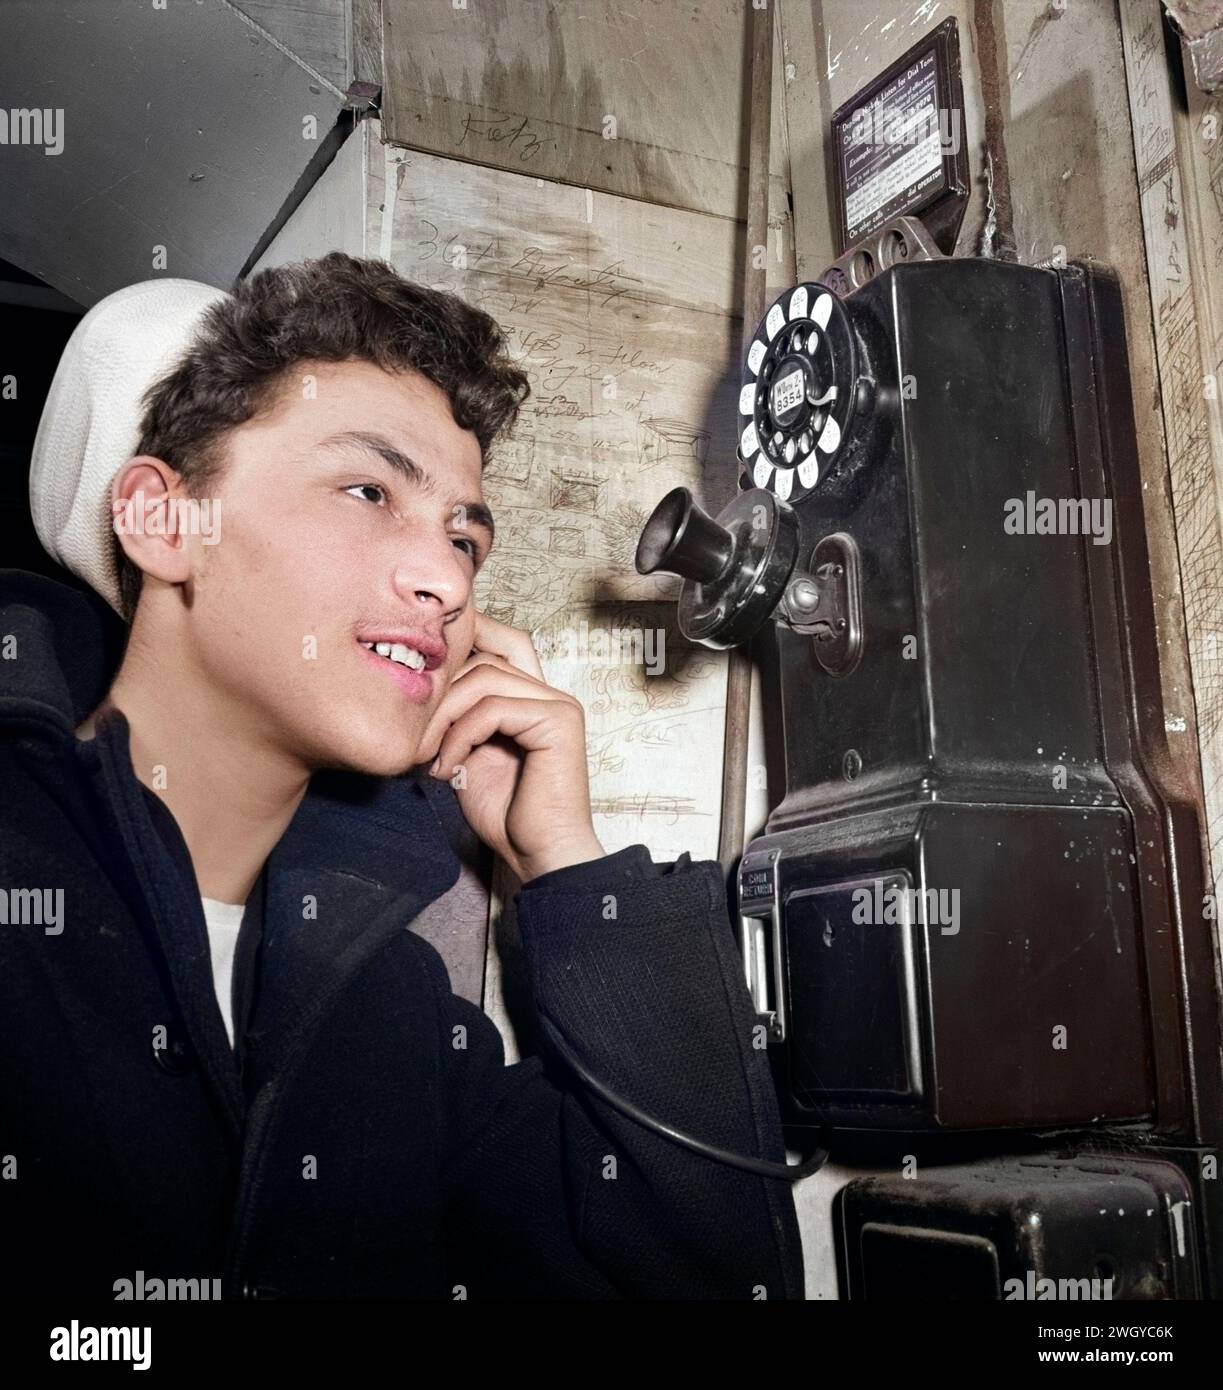 Ragazzo di 16 anni che si trova nella riserva navale degli Stati Uniti e parla al telefono a pagamento, New York, New York, USA, Marjory Collins, U.S. Office of War Information, gennaio 1943 Foto Stock